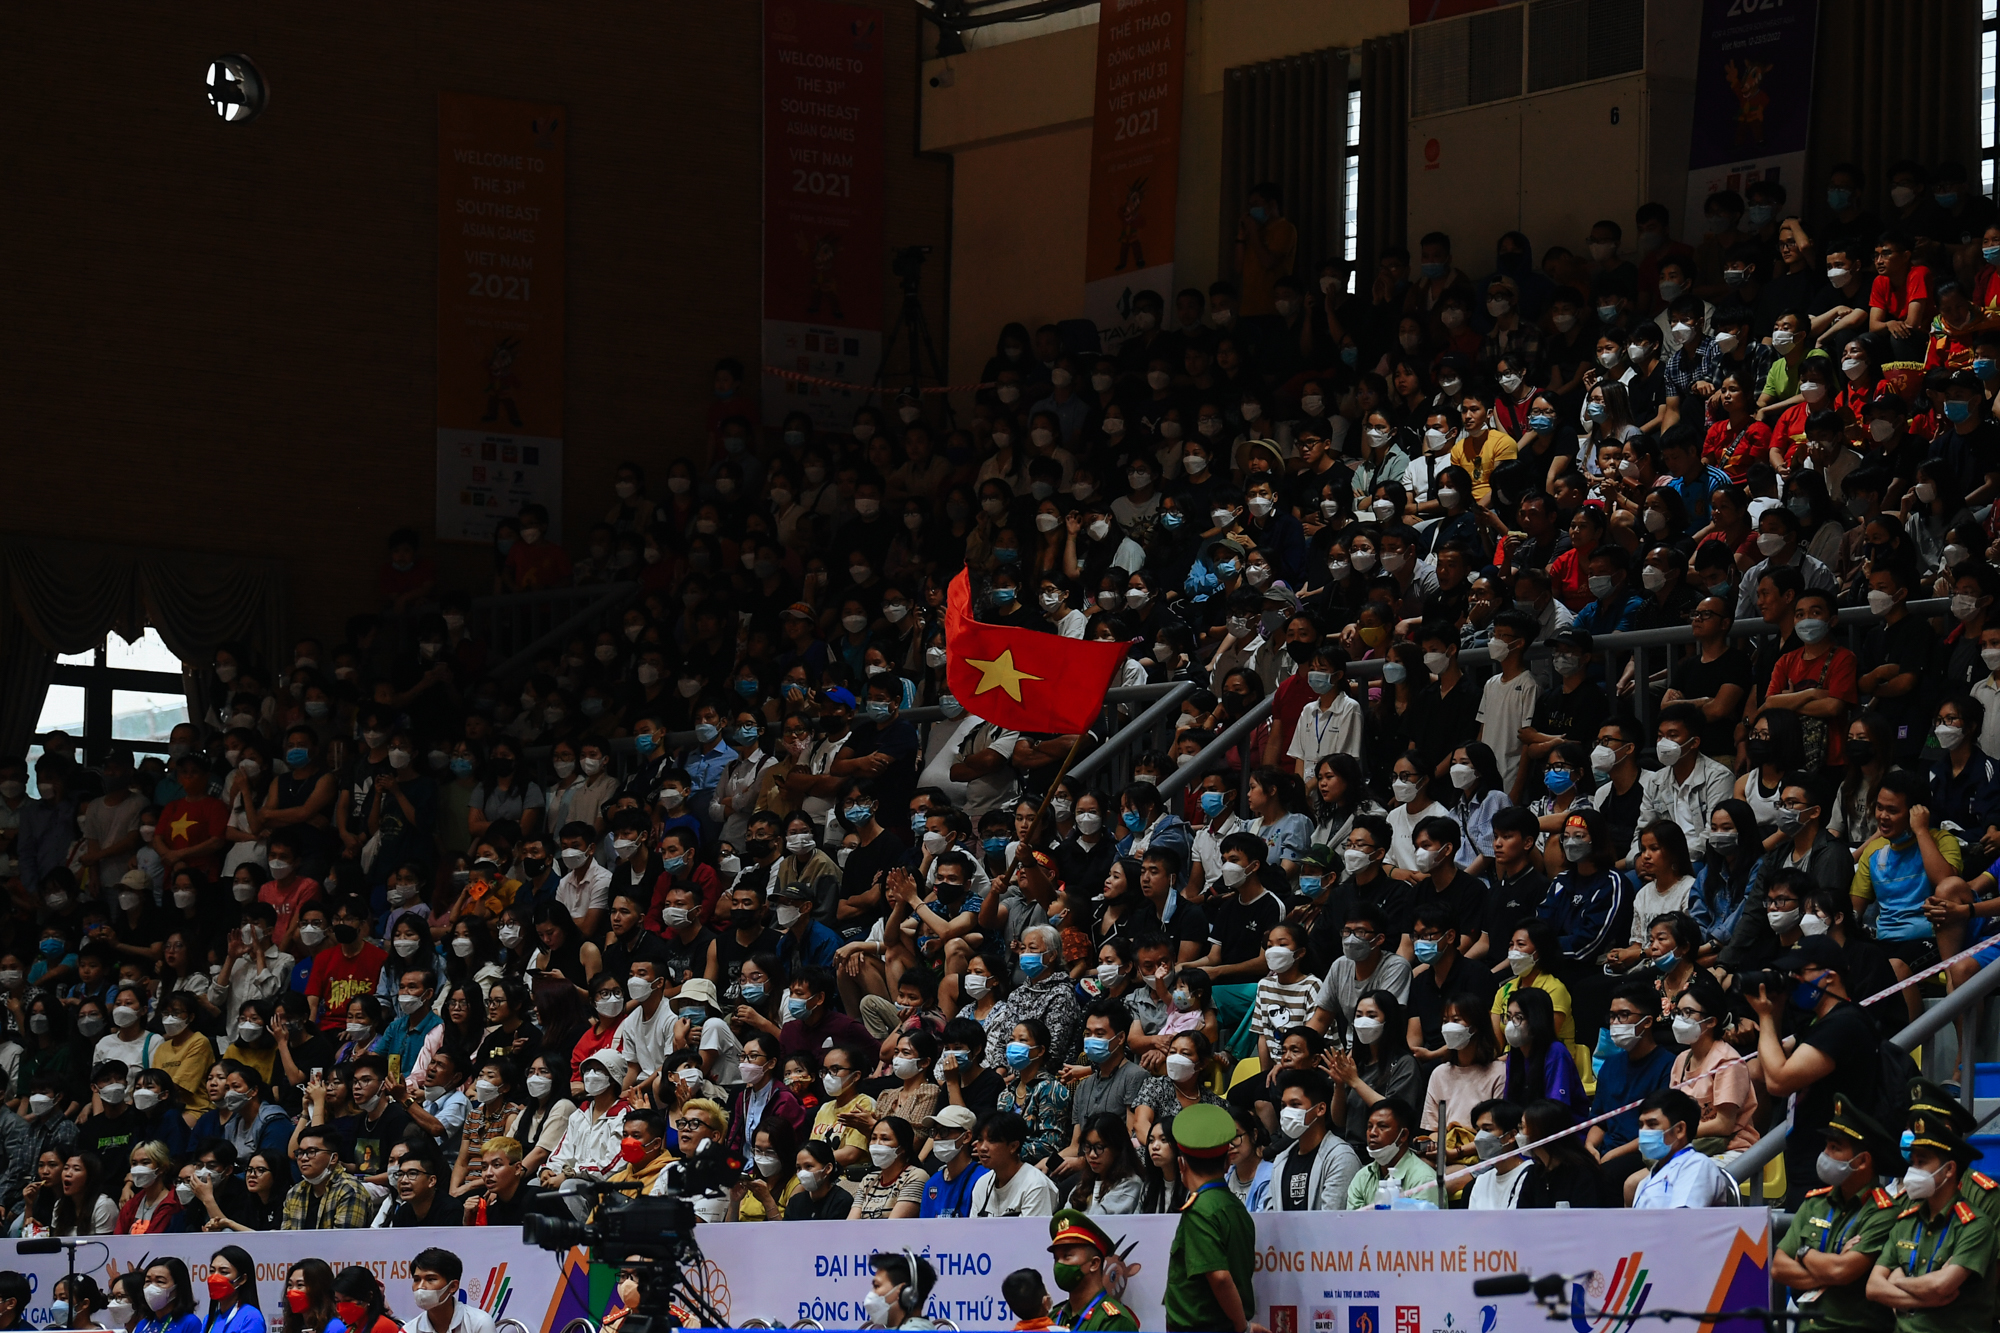 Tuyển nữ bóng rổ Việt Nam thua trước Indonesia nhưng thắng trong lòng người hâm mộ - Ảnh 10.